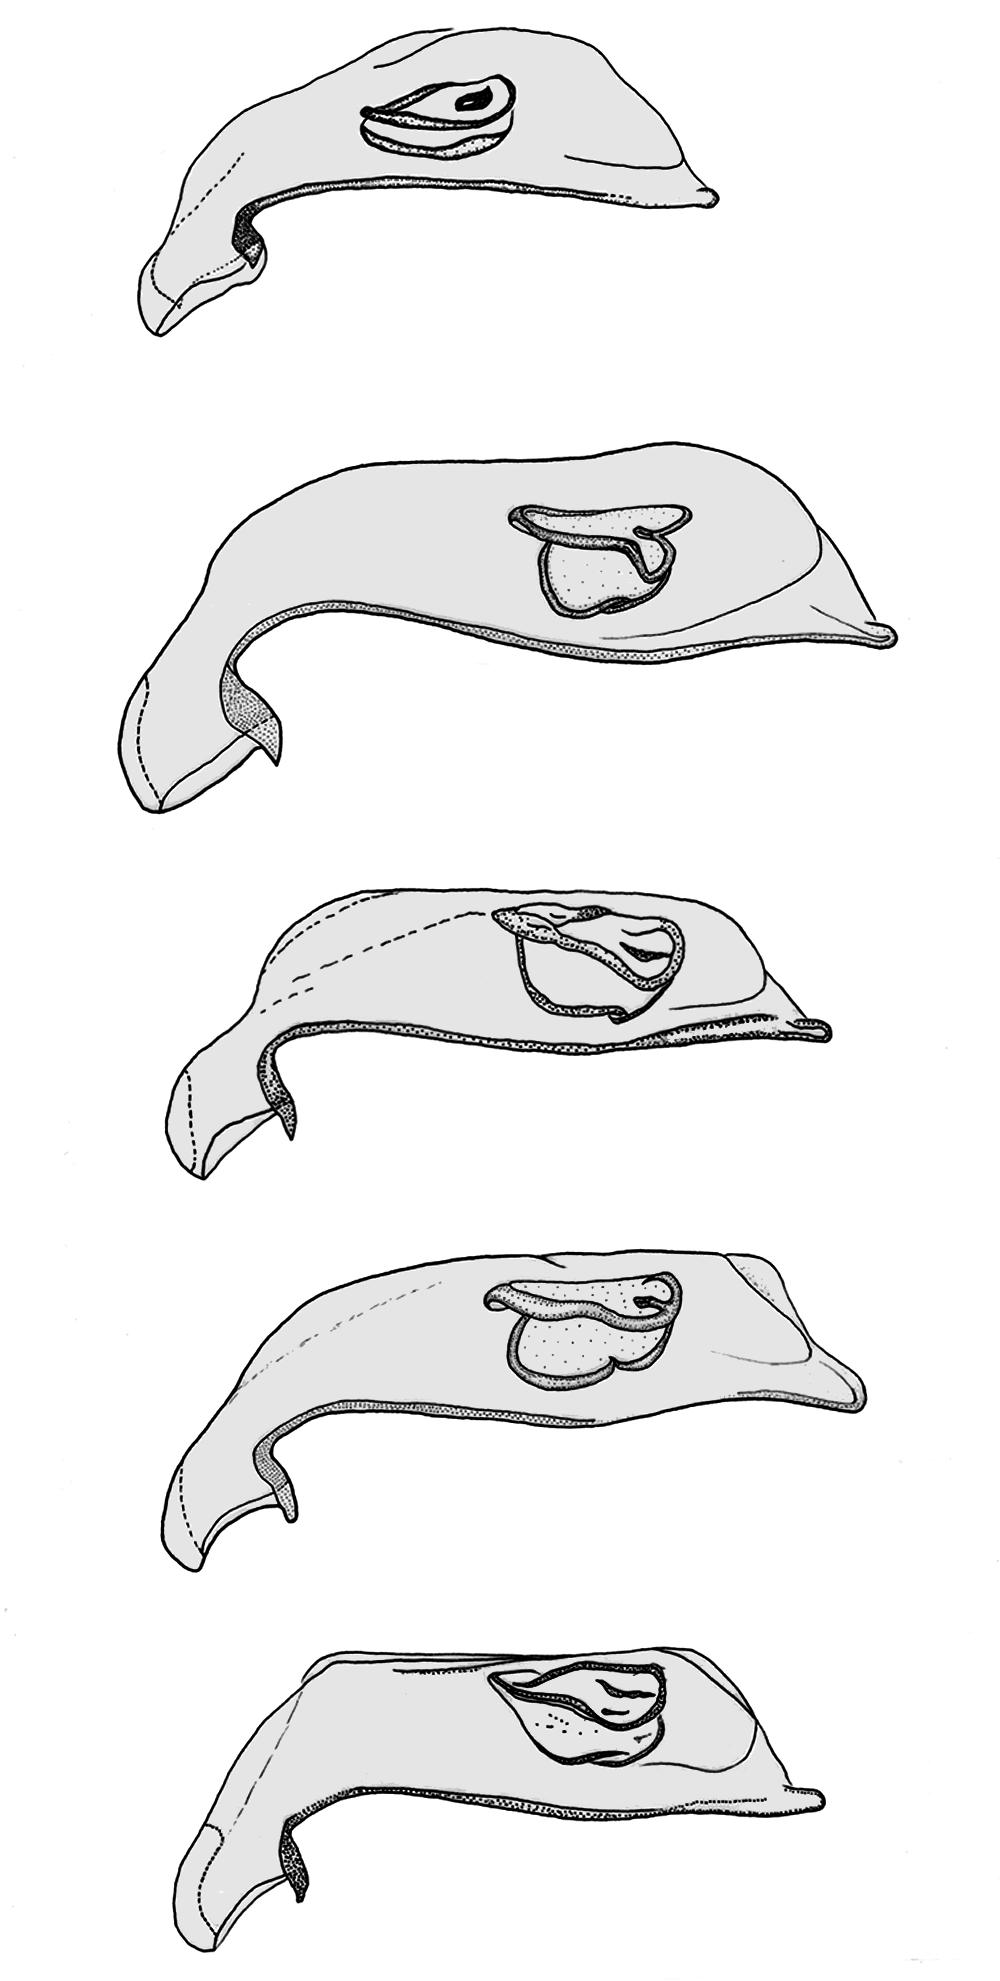 19 0.05 mm 20 21 22 23 Figg. 19-23 Rappresentazione schematica degli edeagi in visione laterale di: H. aubei (Saulcy, 1863) di Molini di Triora m 460 s.l.m. (Liguria, Imperia) (19); H.